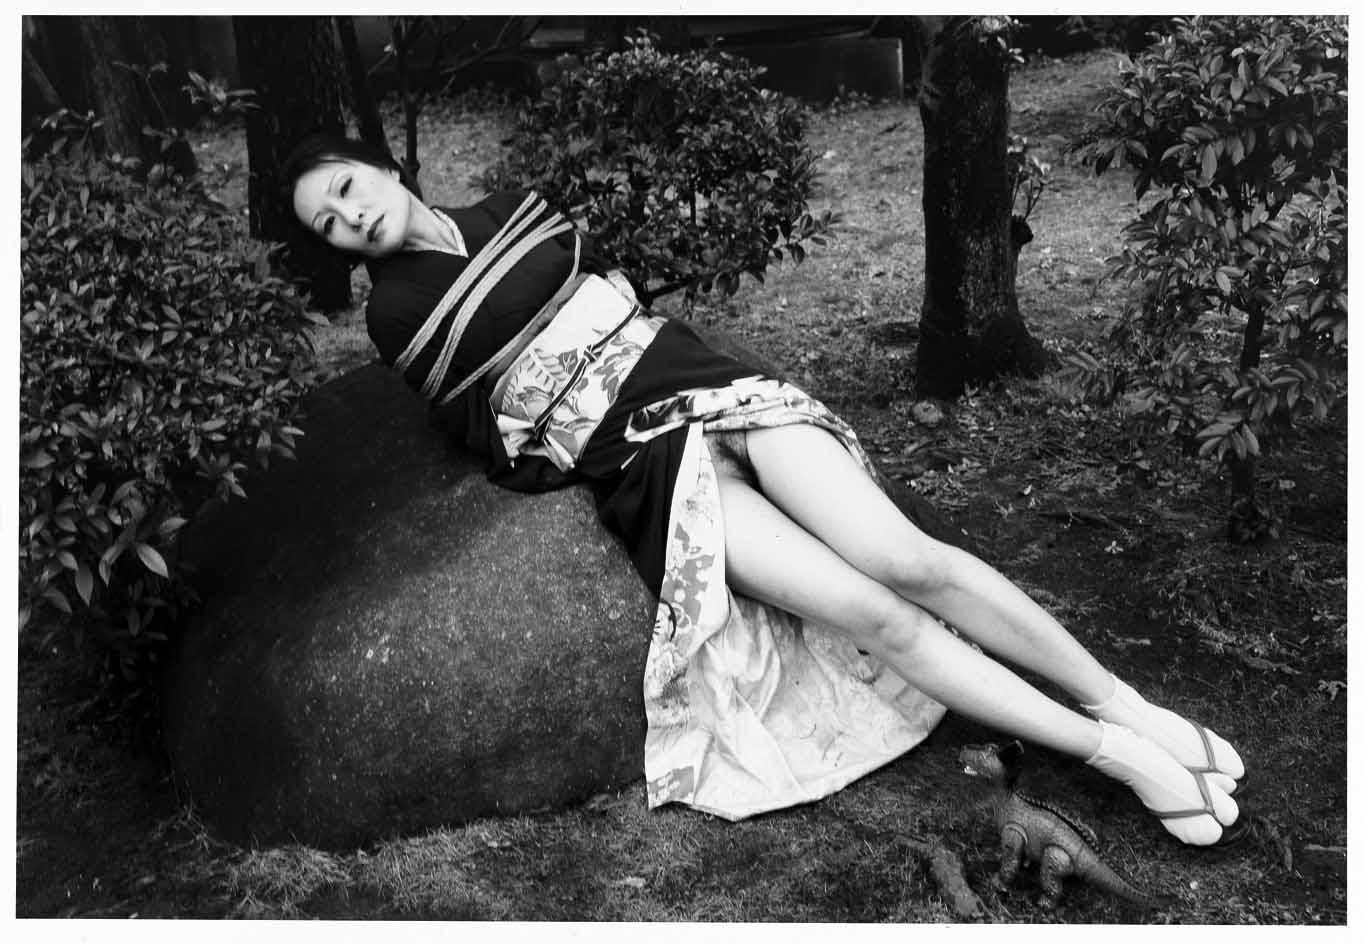 69YK #41 – Nobuyoshi Araki, Japanese Photography, Nude, Black and White, Art